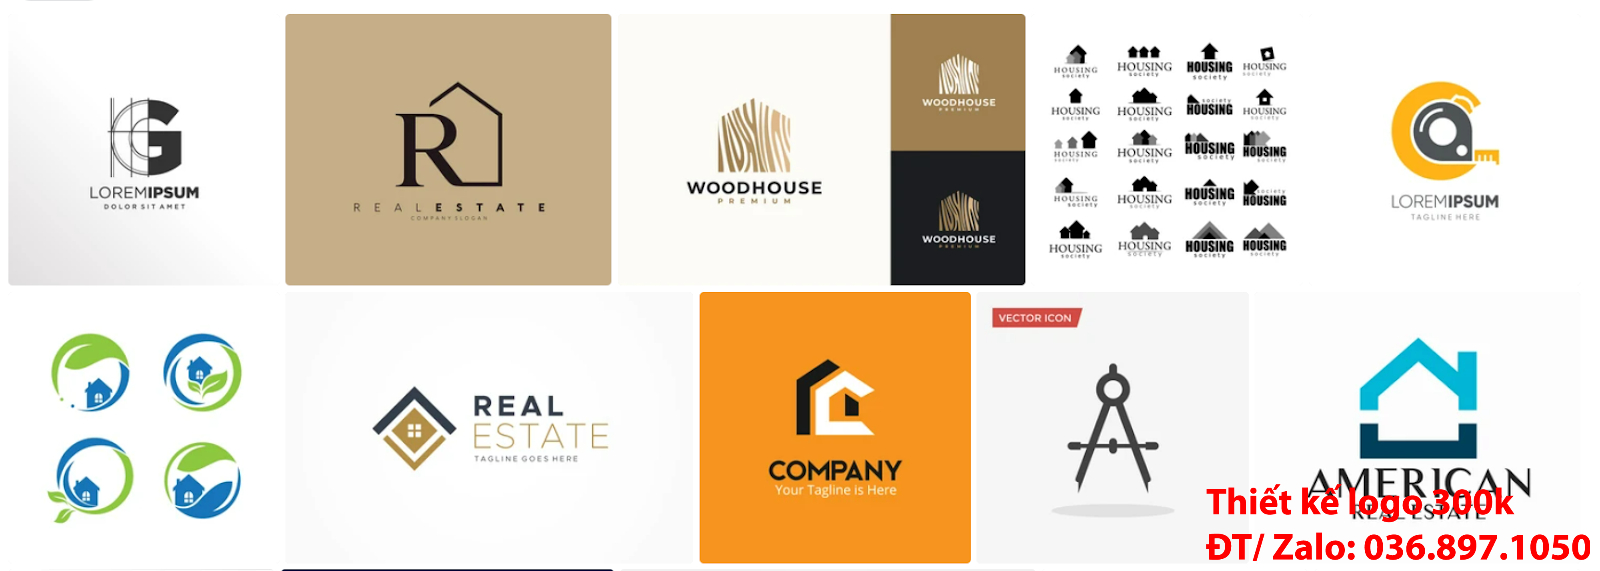 Dịch vụ cung cấp mẫu thiết kế logo công ty kiến trúc chuyên nghiệp đơn giản chất lượng